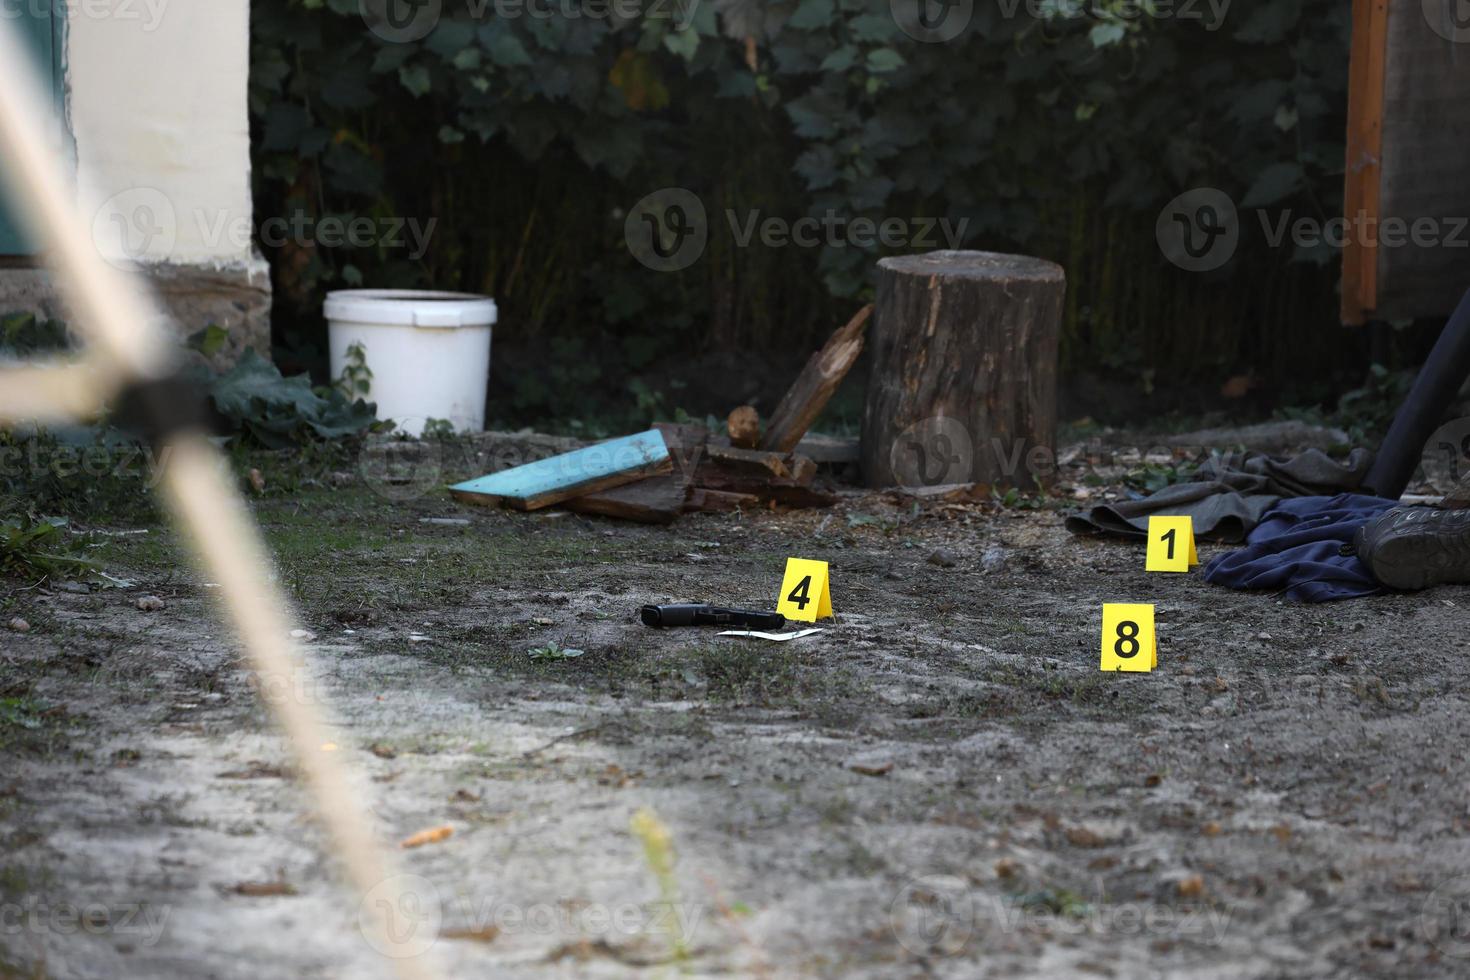 provas com marcador amarelo csi para numeração de provas no quintal residencial à noite. conceito de investigação da cena do crime foto